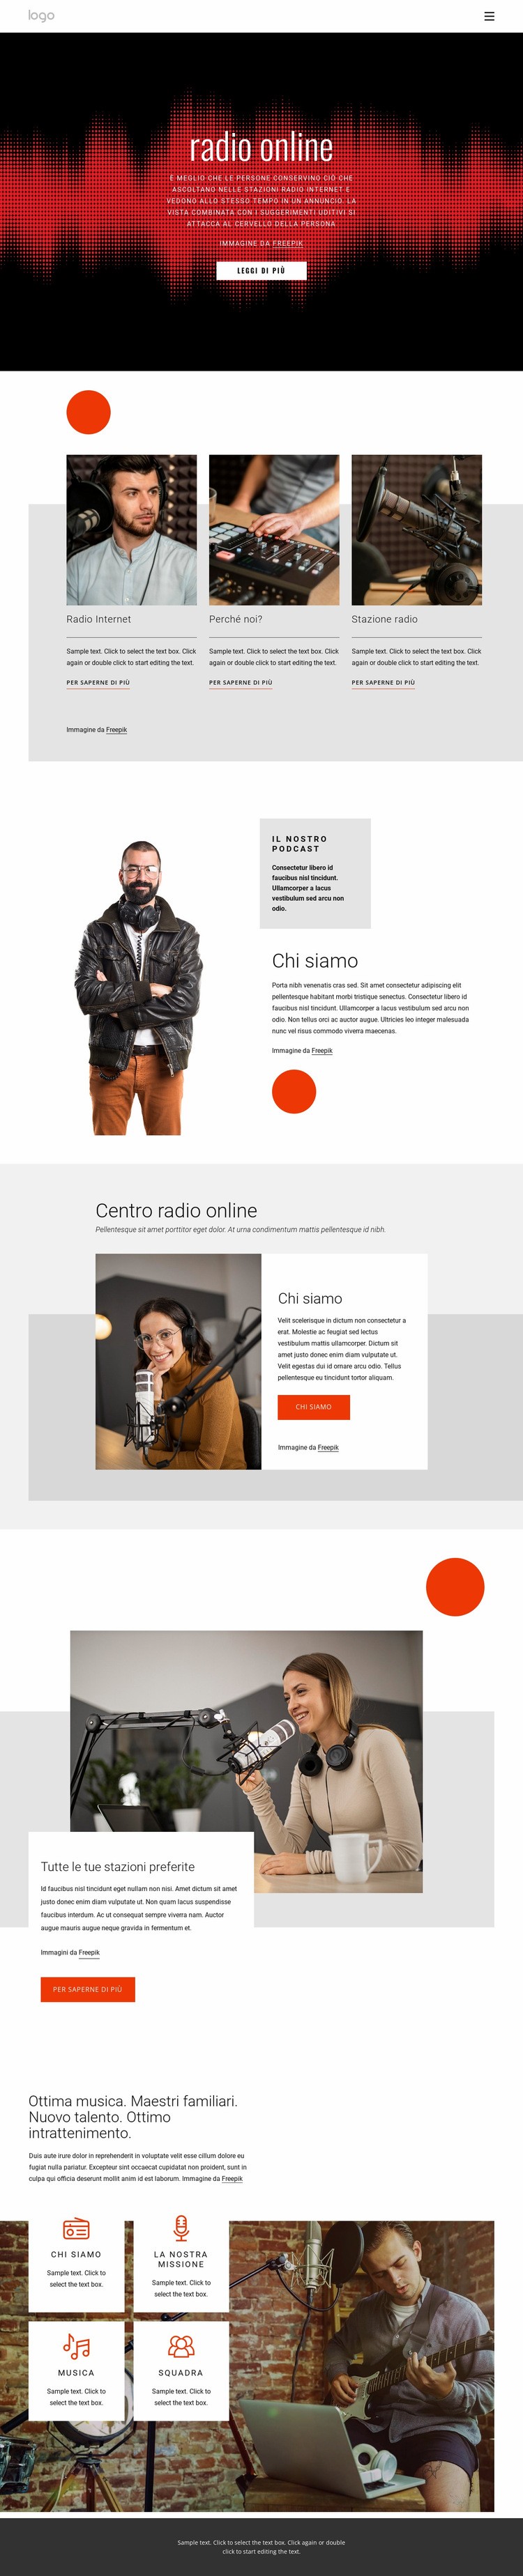 Programmi radiofonici in linea Costruttore di siti web HTML